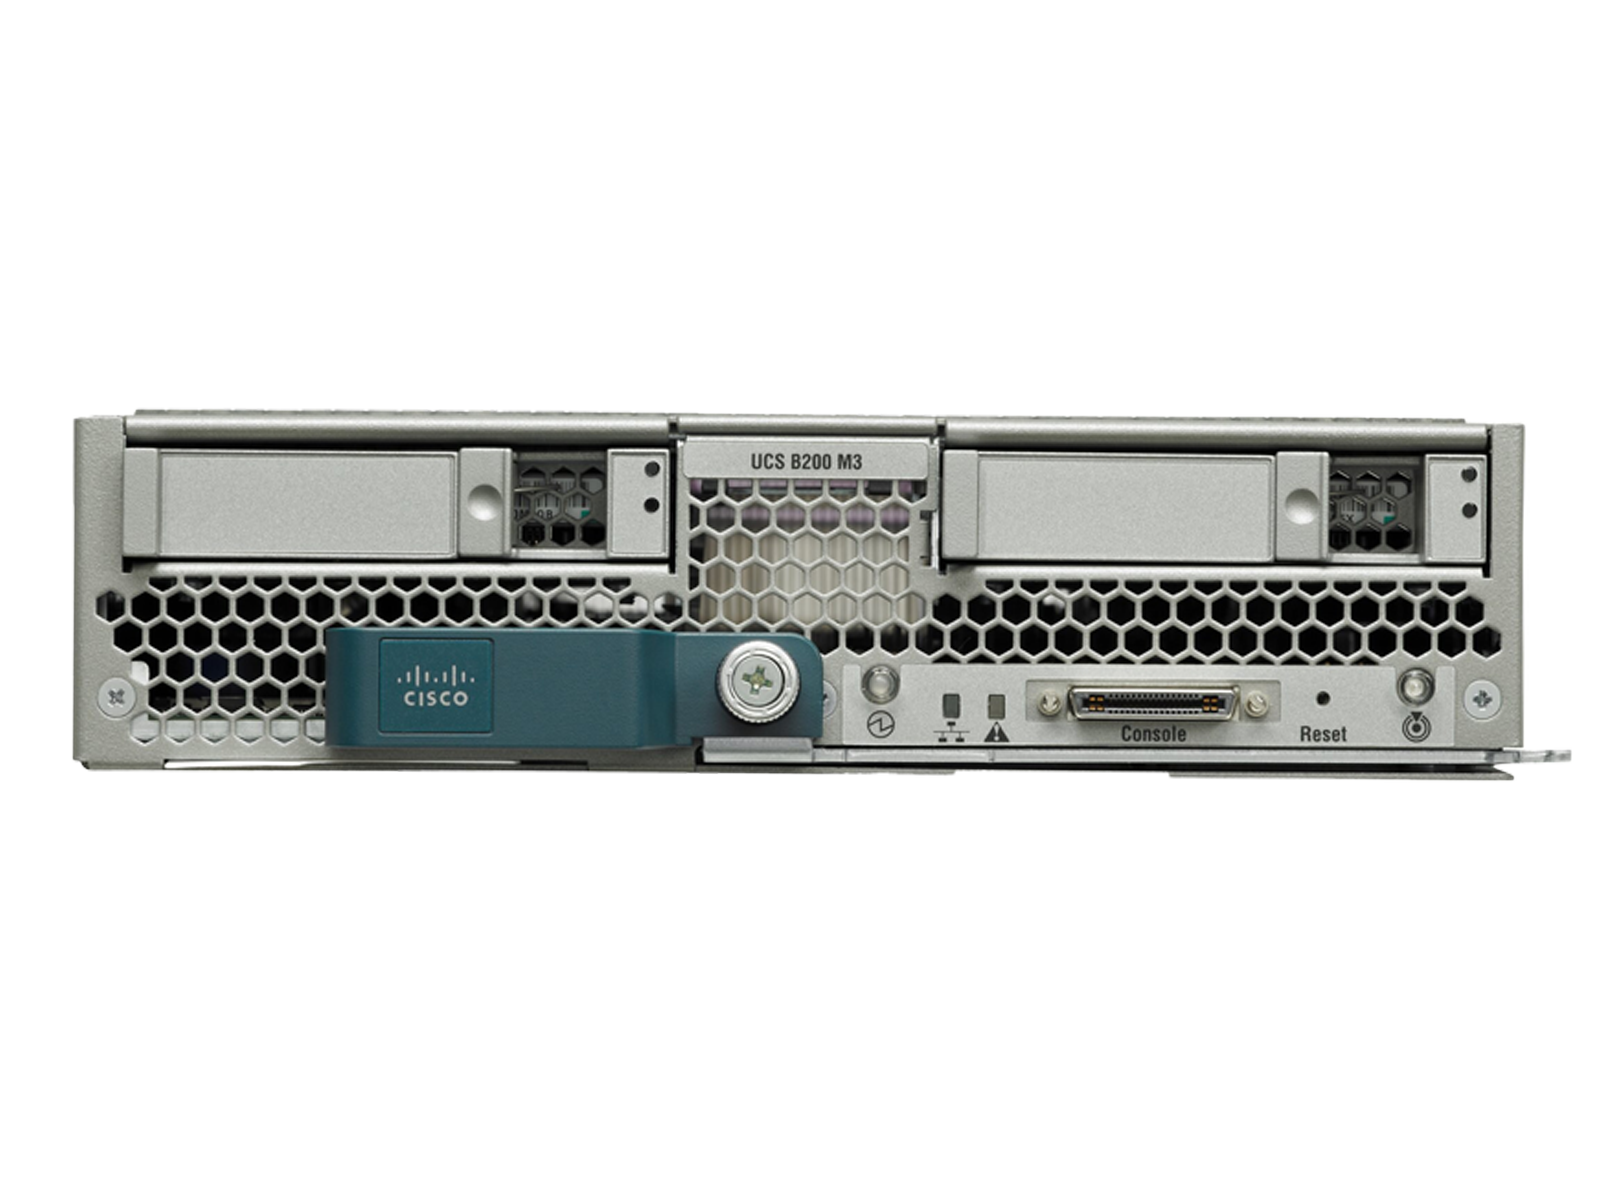 Cisco B200 M3 Two E5-2667V2 8x 16GB=128GB Ram Blade Server VIC1240 2x 300GB 10K.